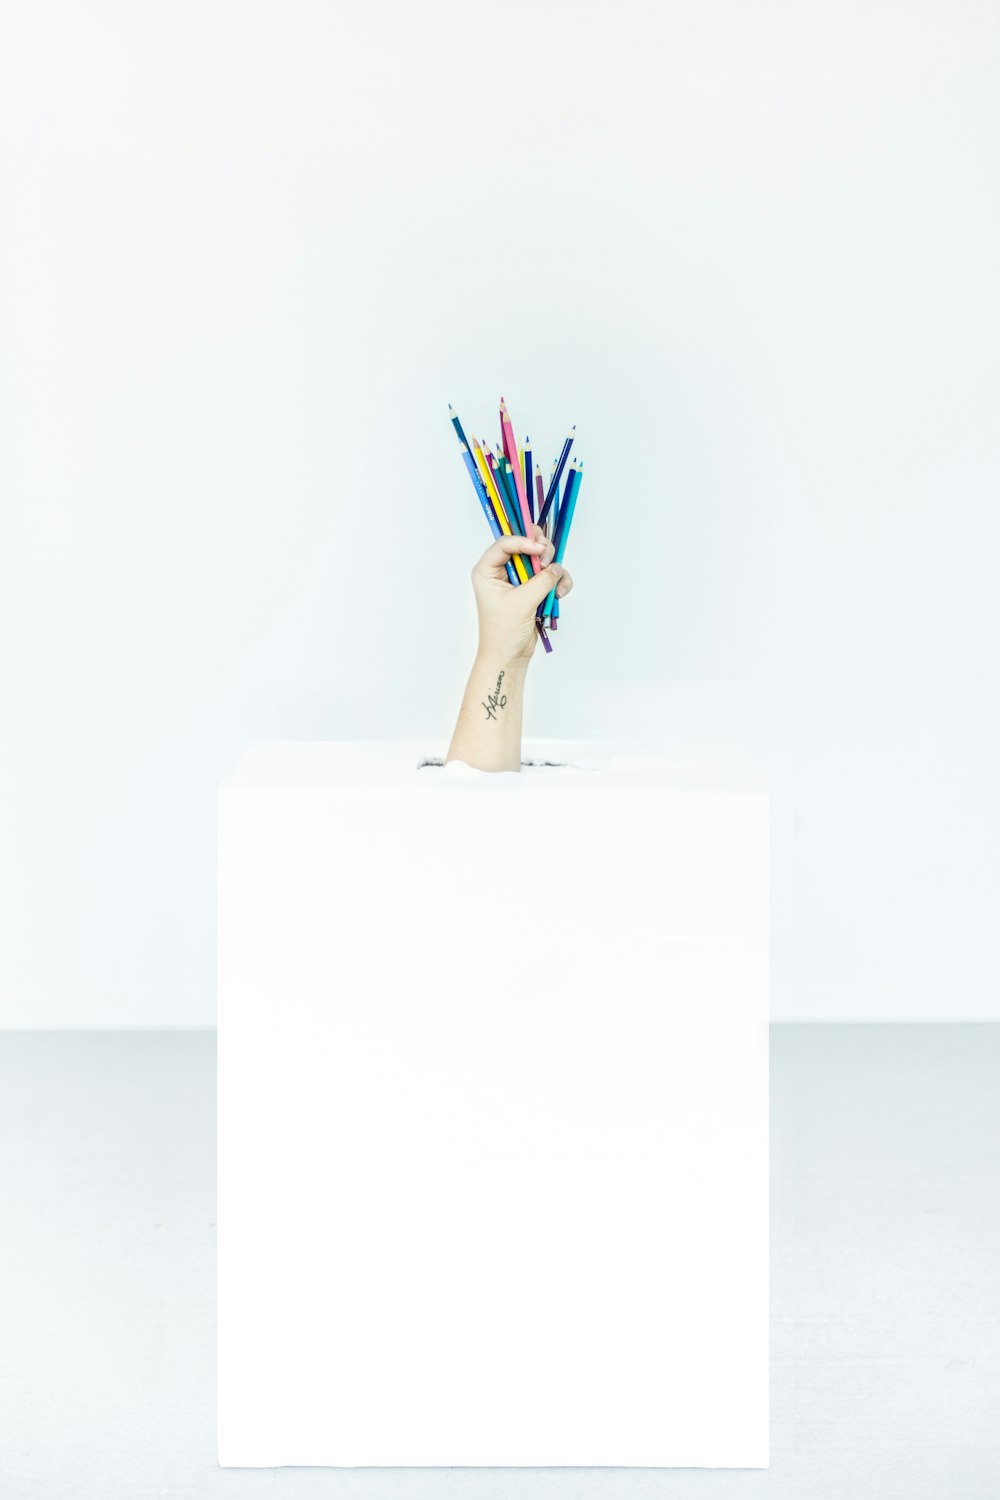 La mano de una persona salió de la caja que sostenía bolígrafos de varios colores